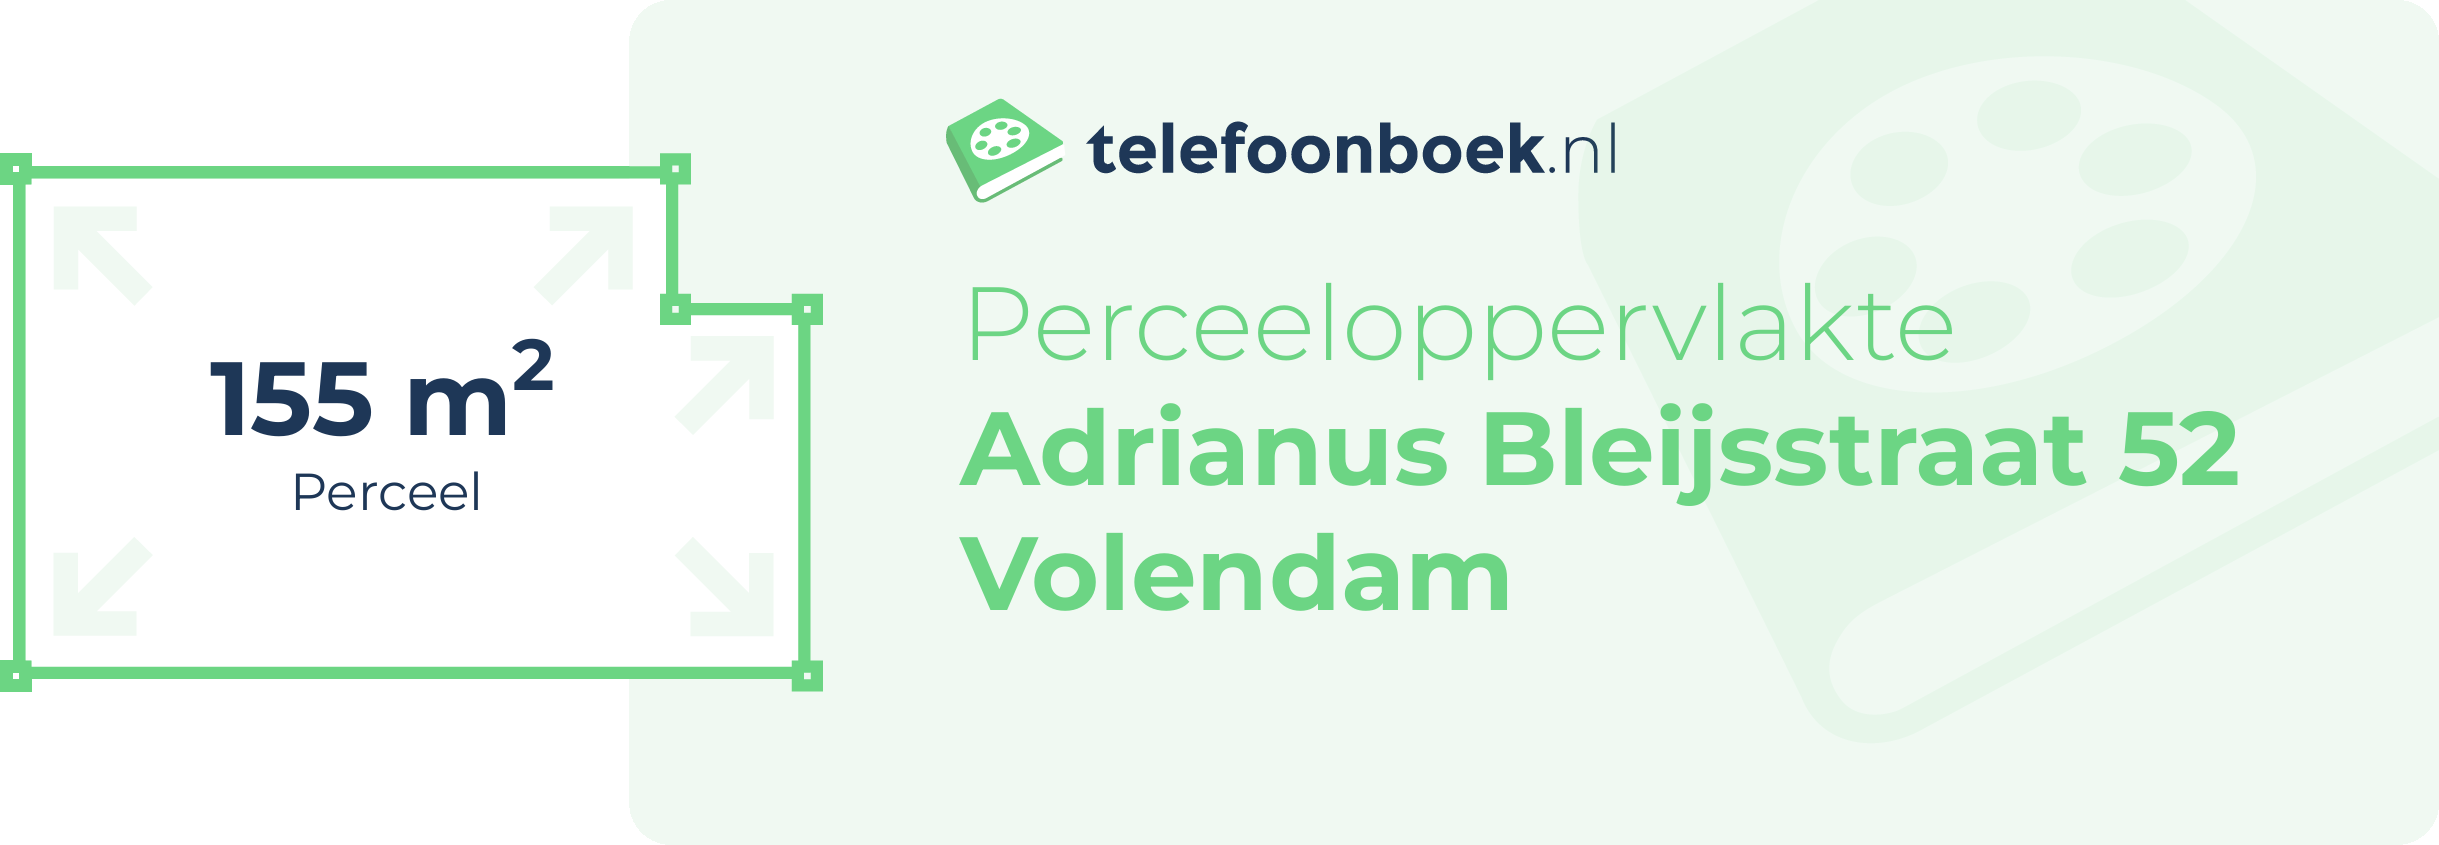 Perceeloppervlakte Adrianus Bleijsstraat 52 Volendam